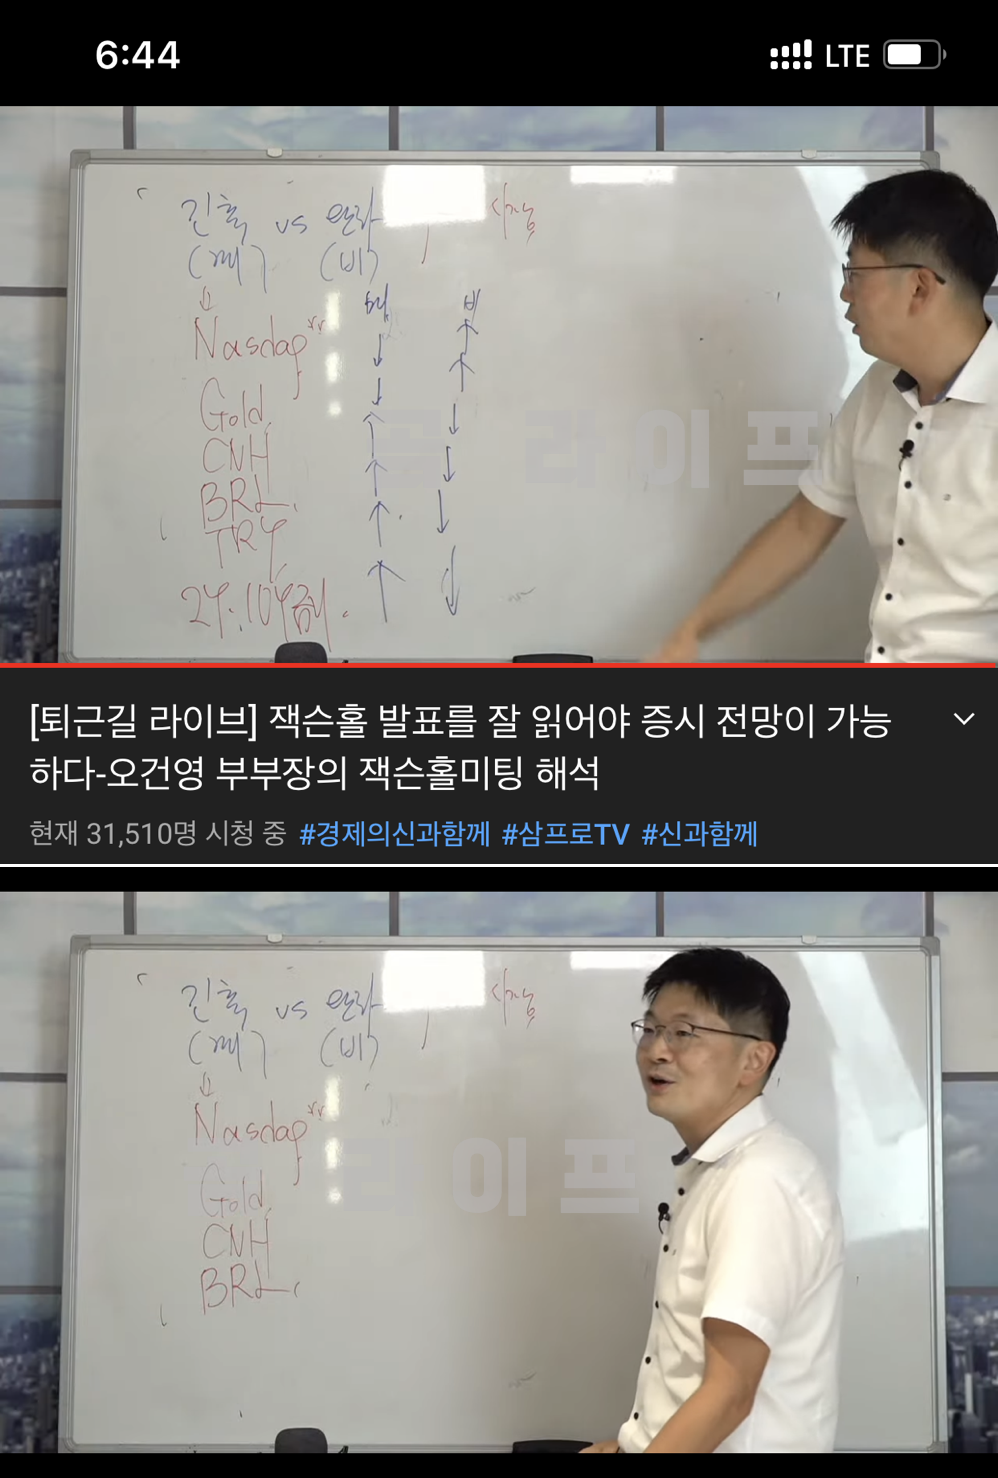 삼프로TV 오견형 부부장의 잭슨홀 미팅 해석 feat 유튜브 캡쳐본